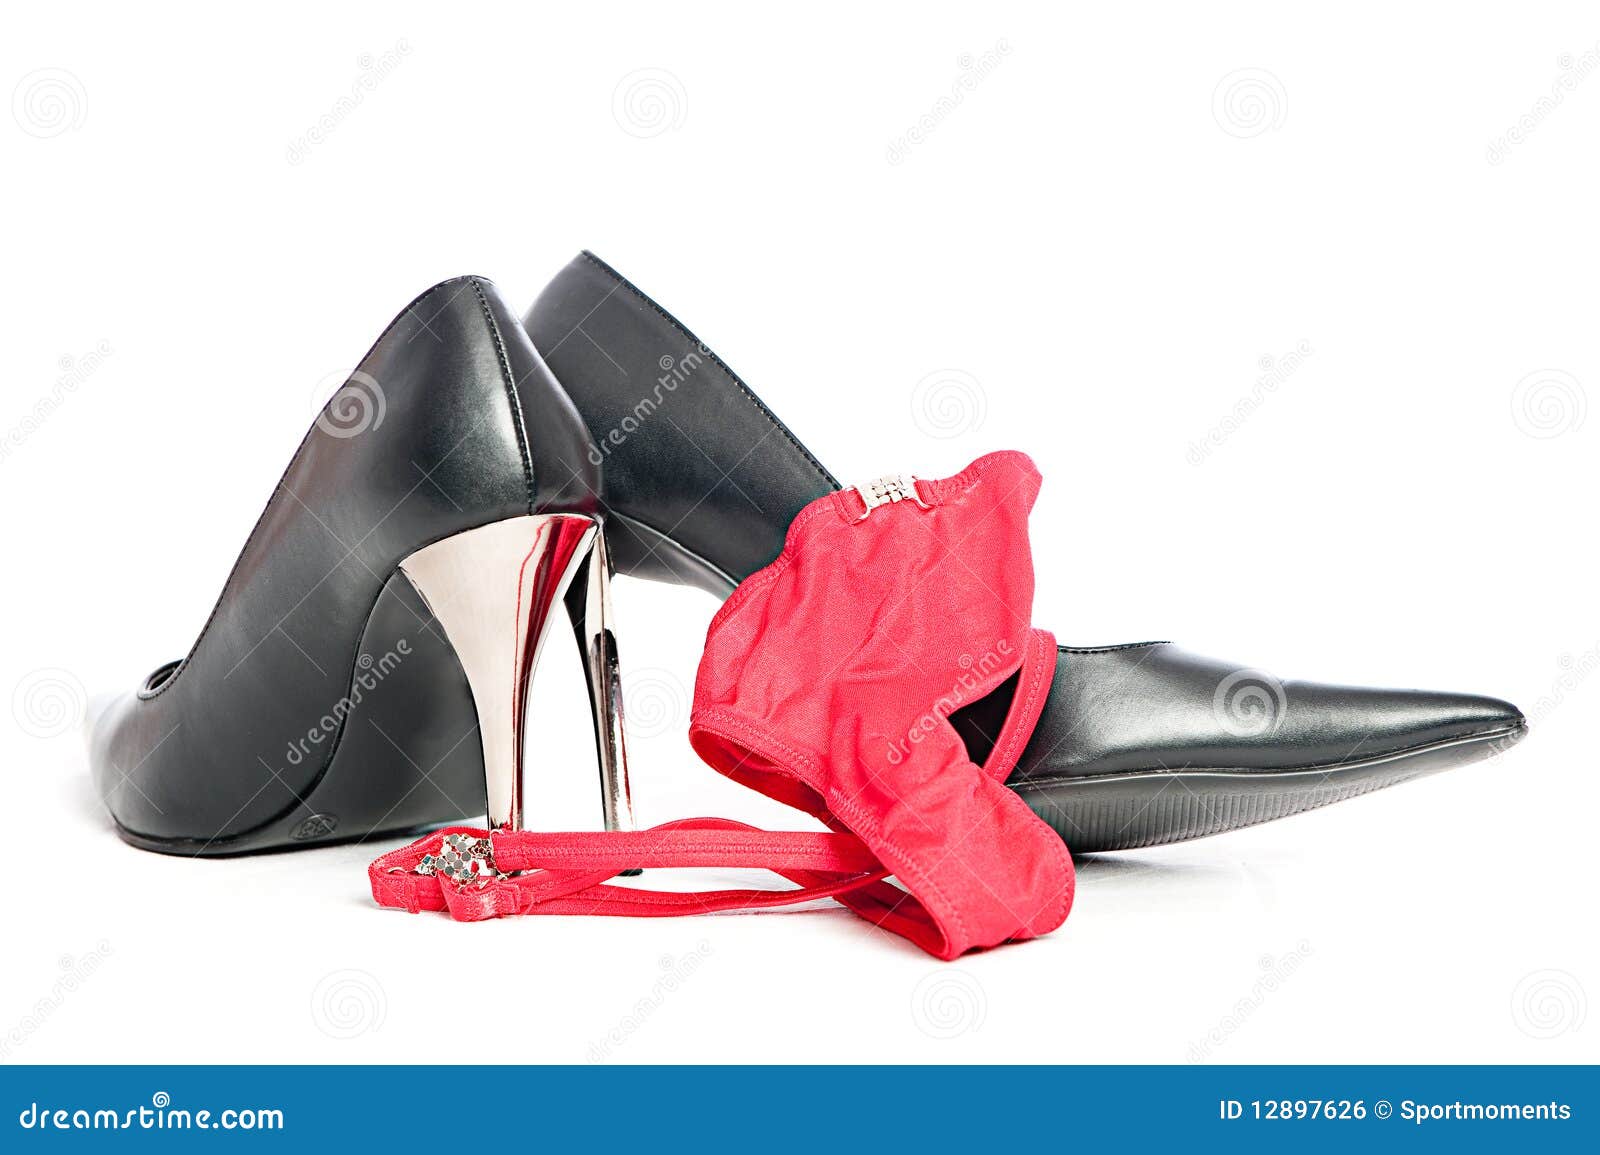 erotic hig heels in black